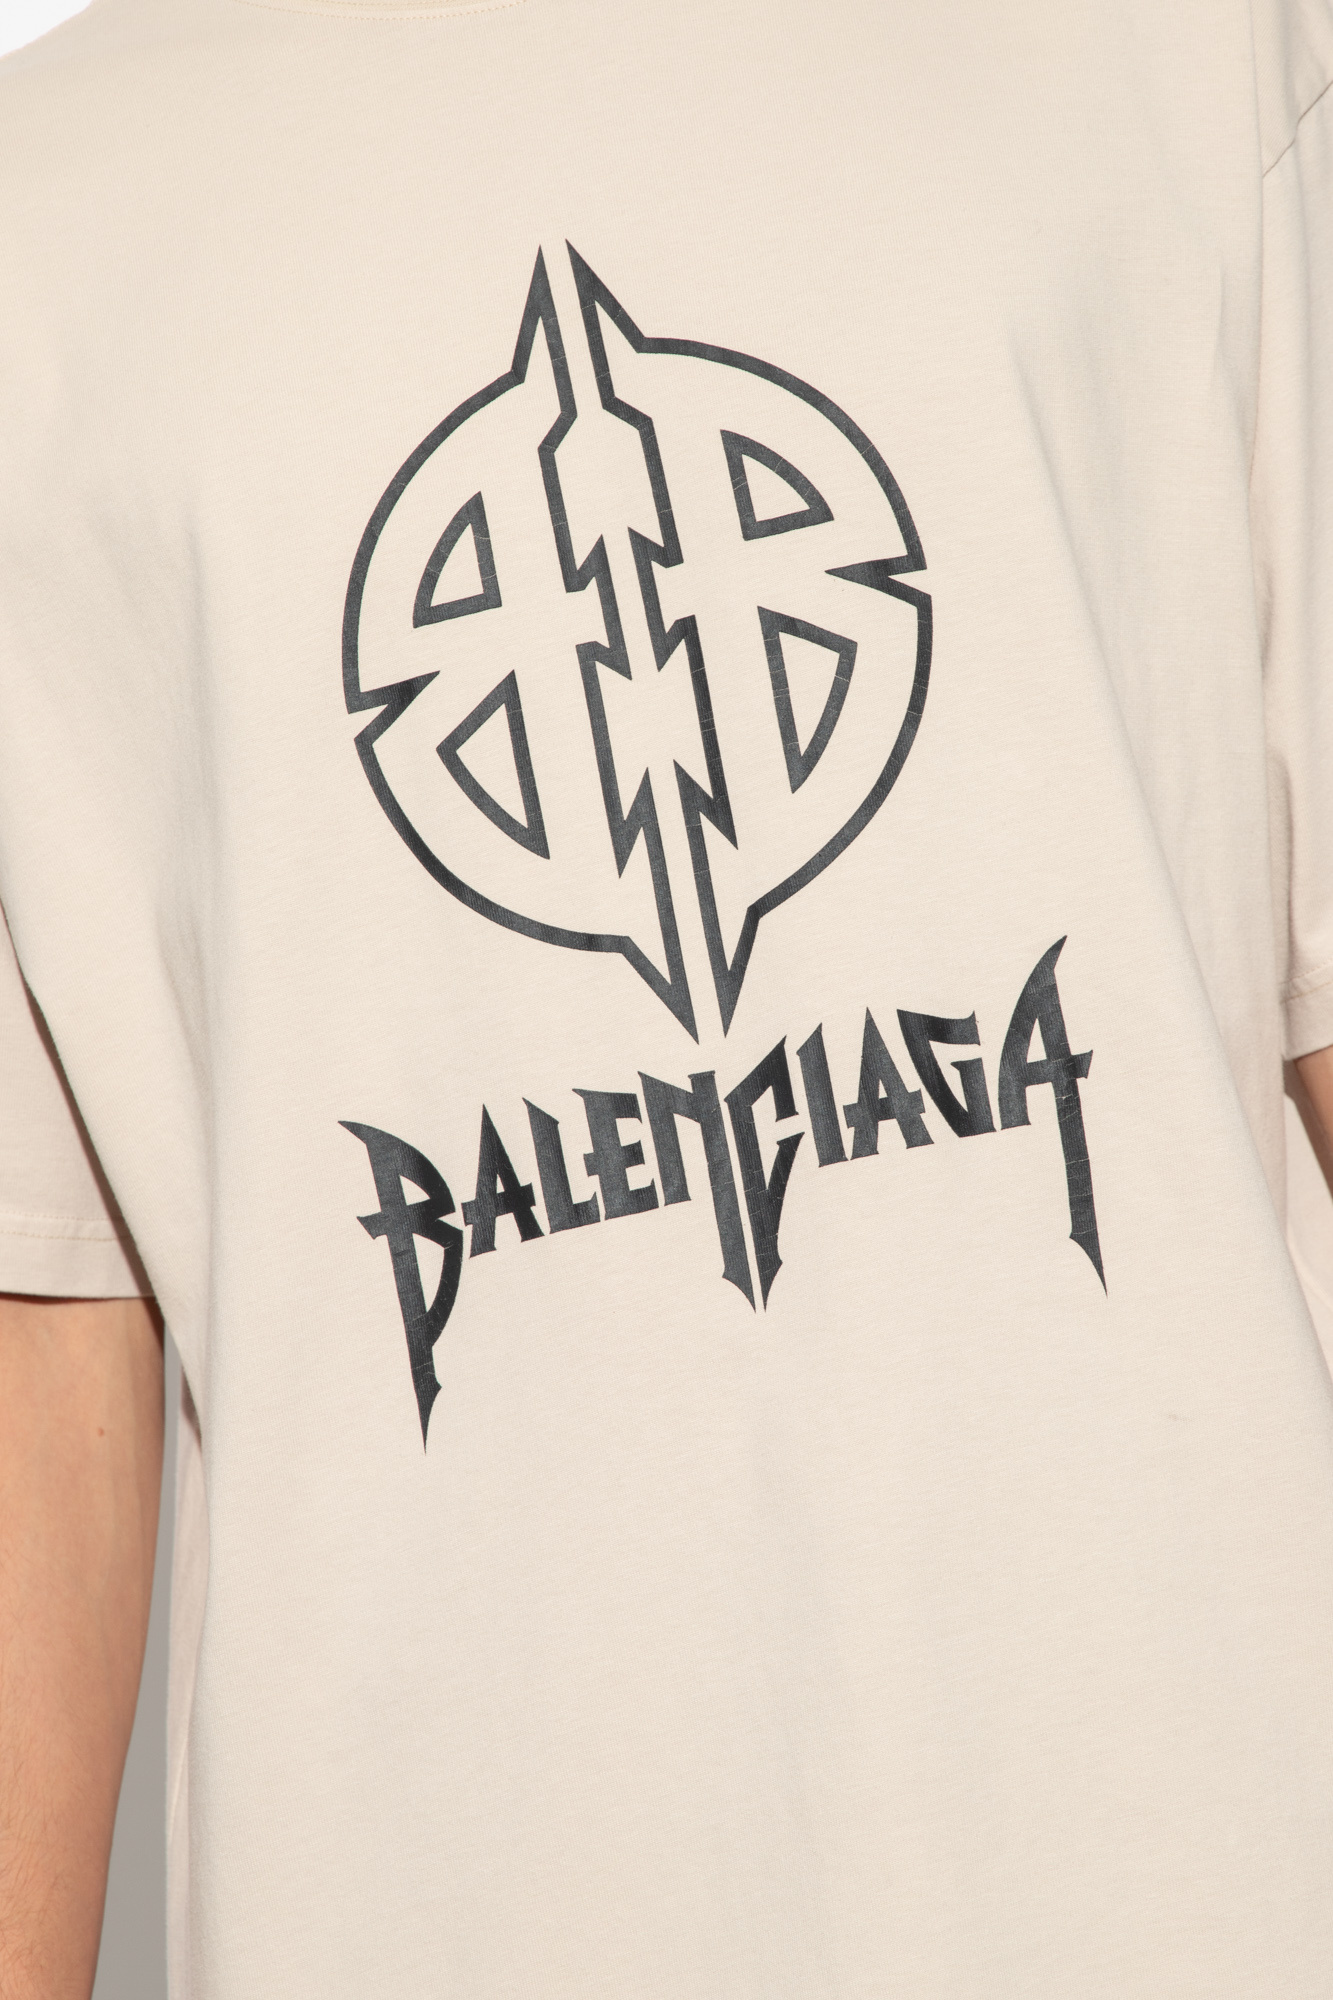 Balenciaga T-shirt retro with logo